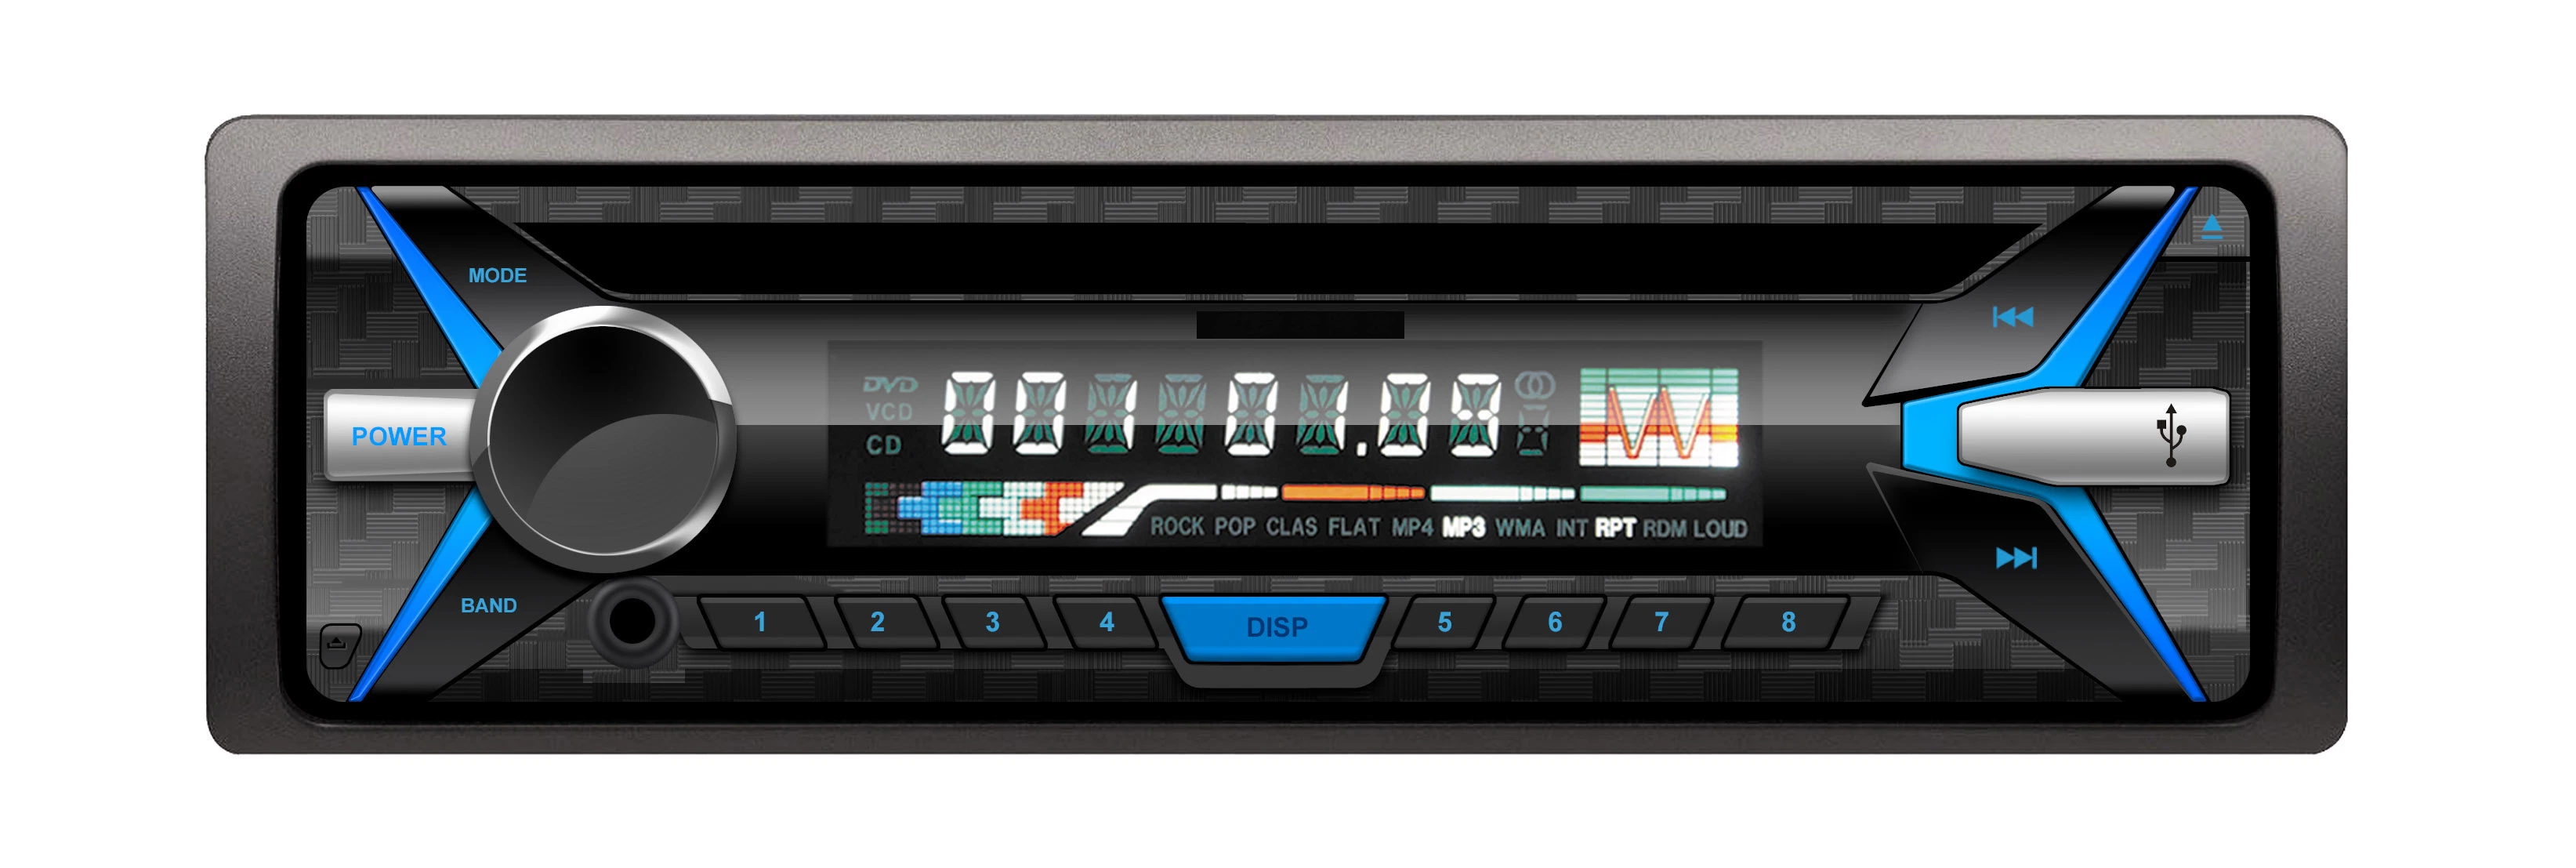 La unidad digital estéreo para coche coche reproductor DVD